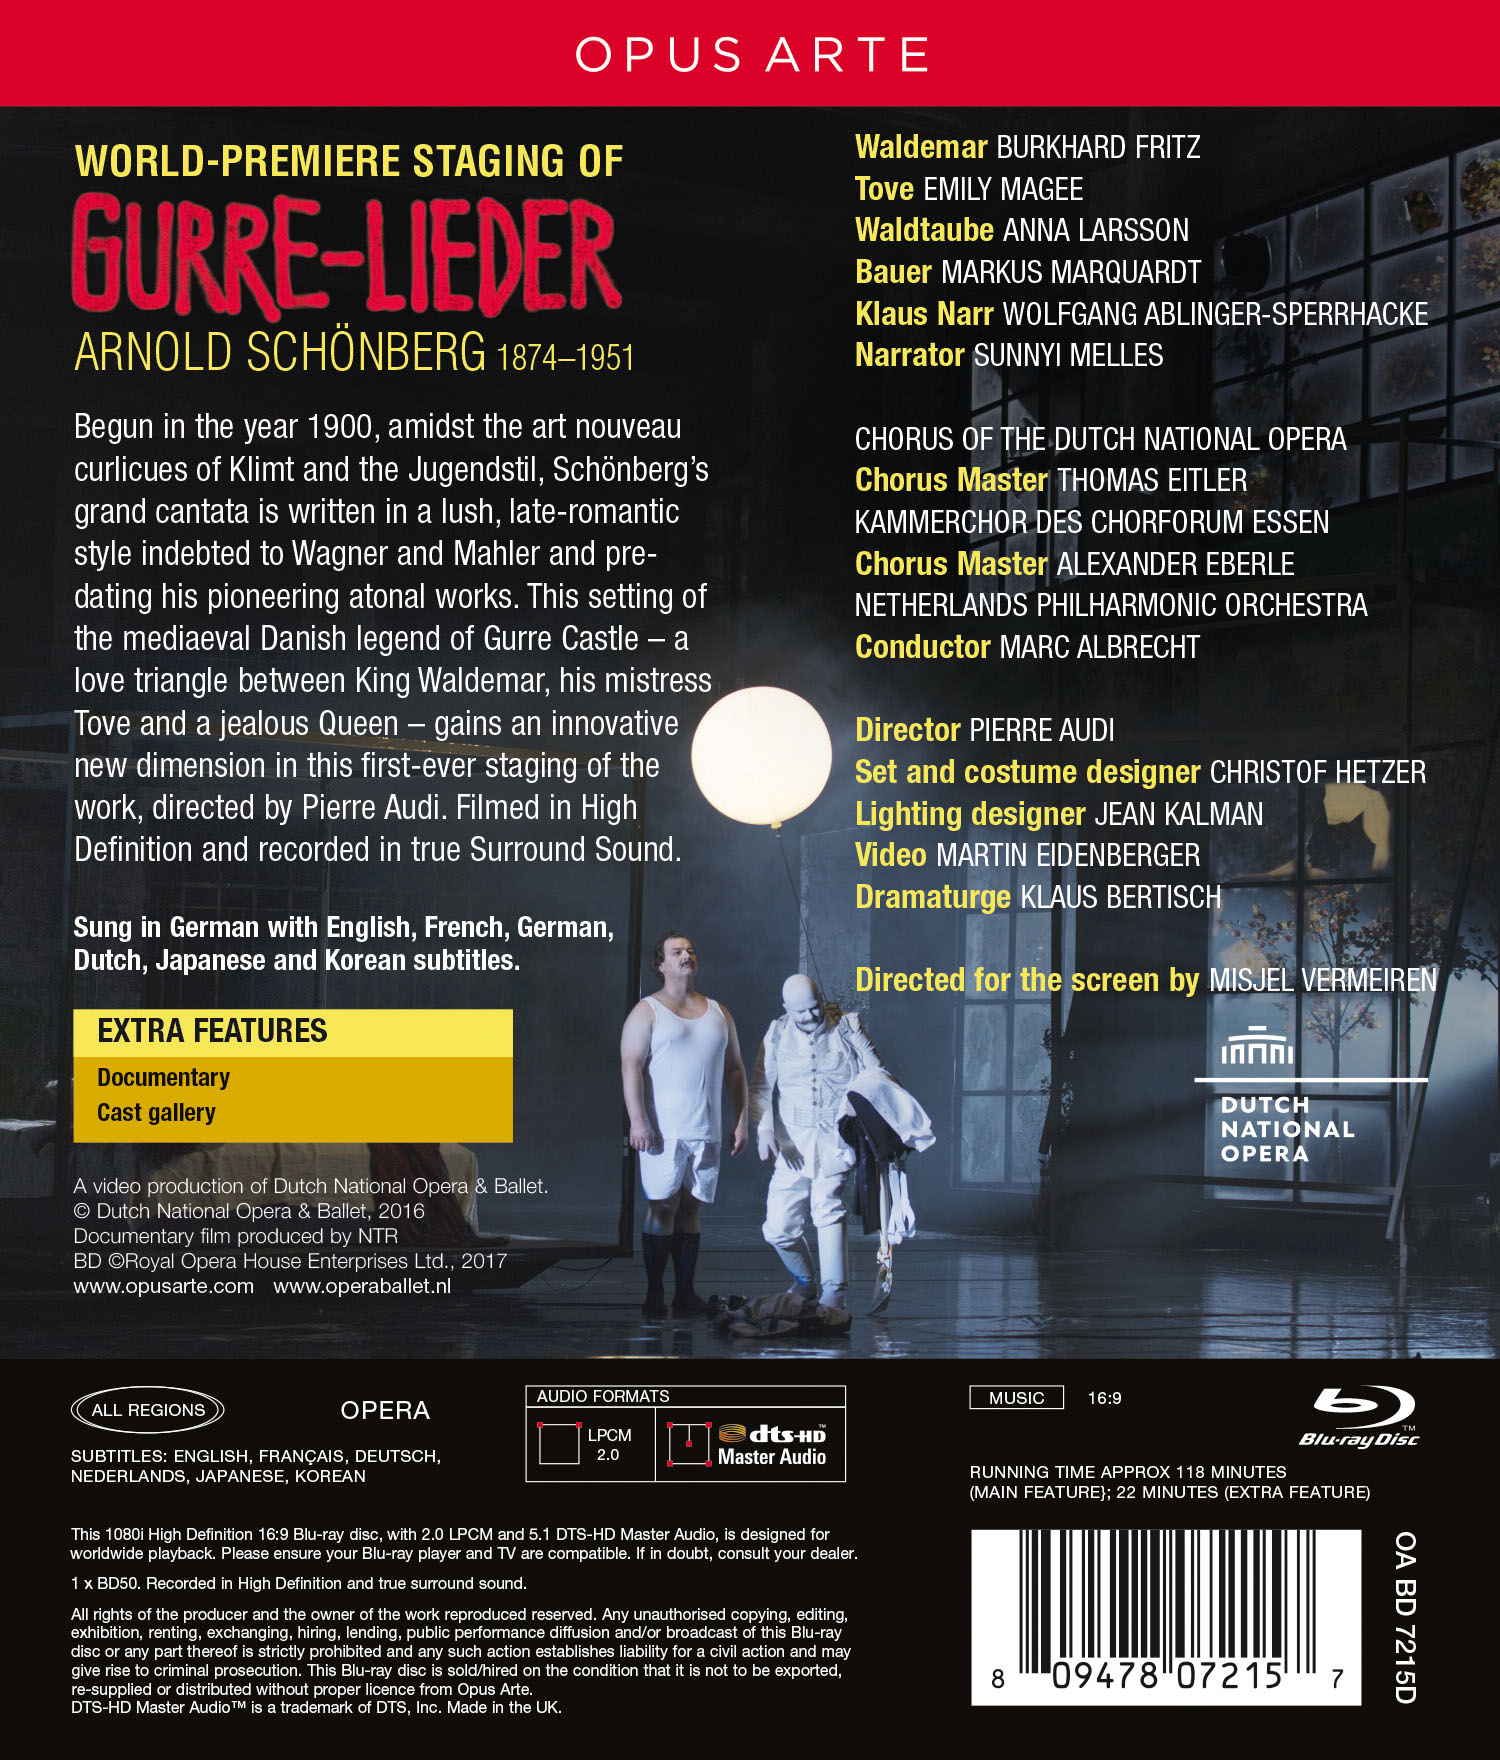 Arnold Schöenberg: Gurre-Lieder (Opus Arte OABD7215D) Blu-ray Disc Back Cover Insert